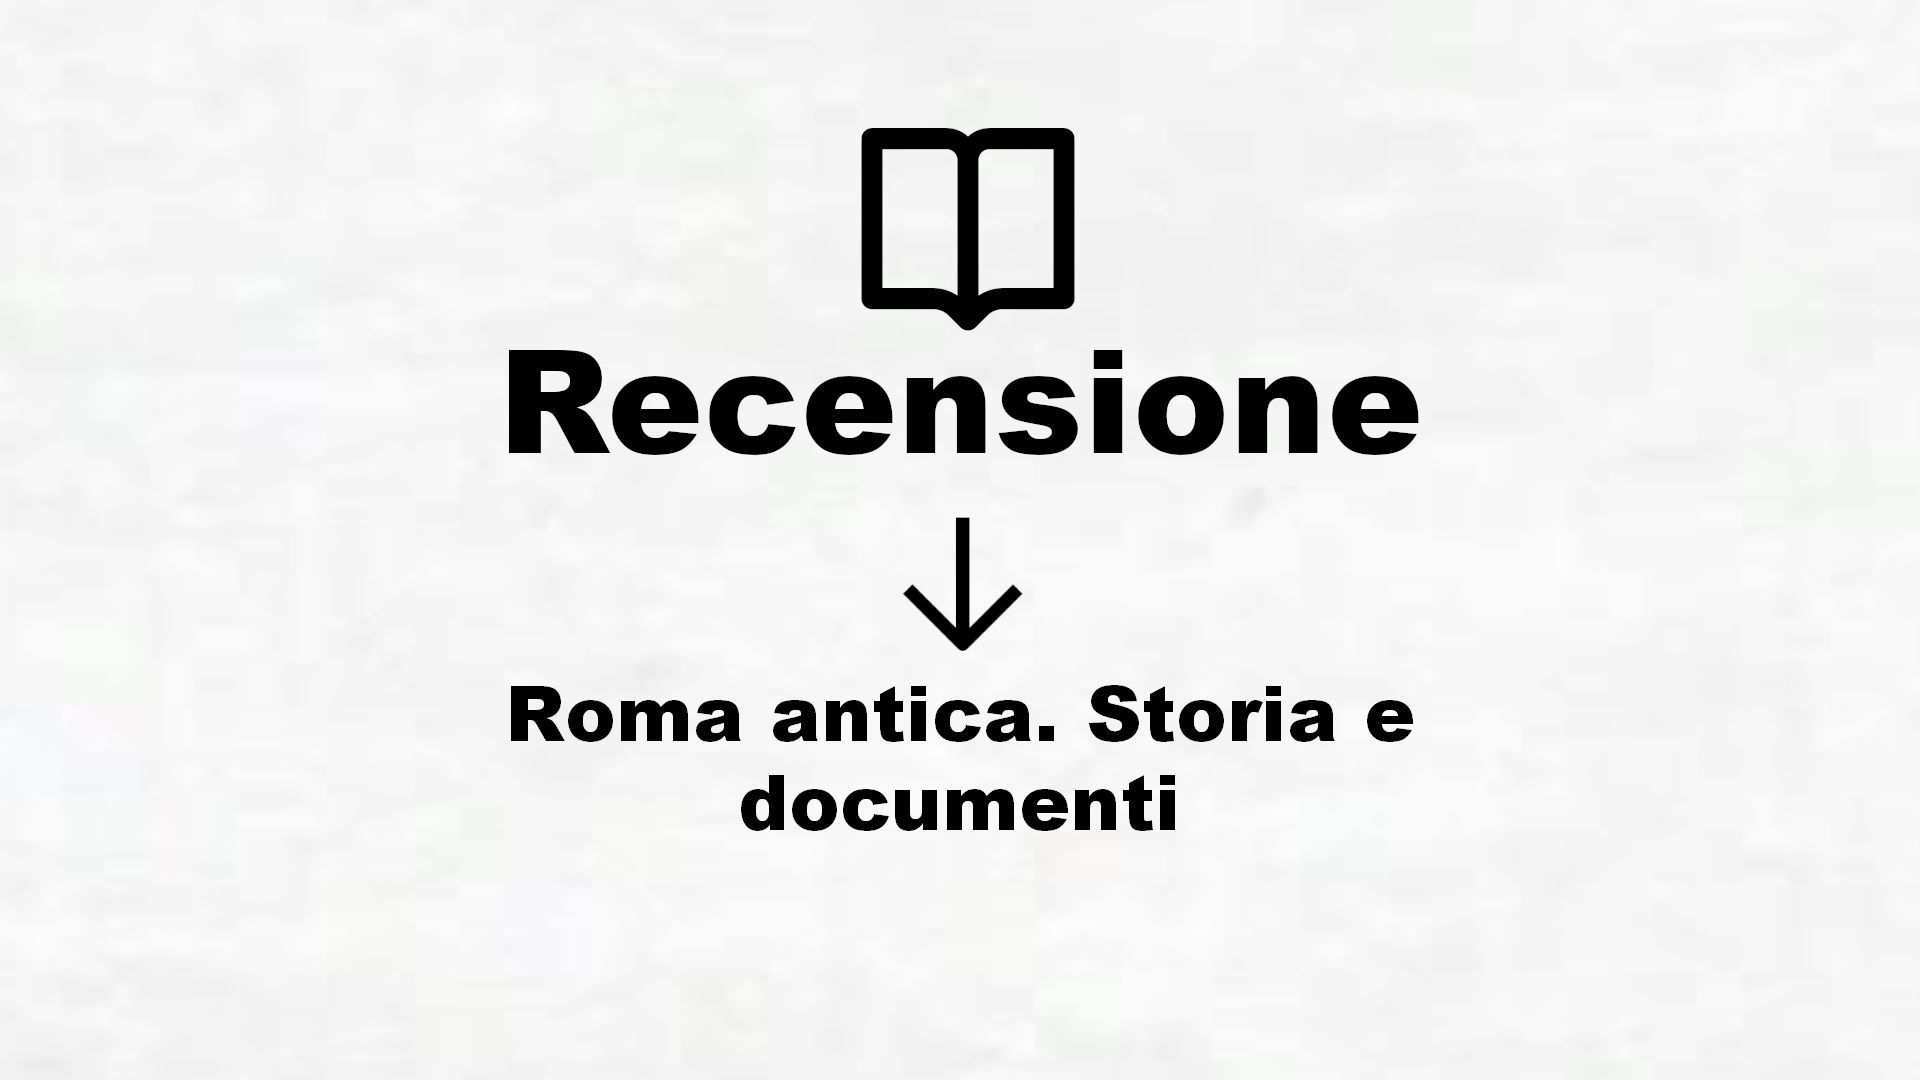 Roma antica. Storia e documenti – Recensione Libro